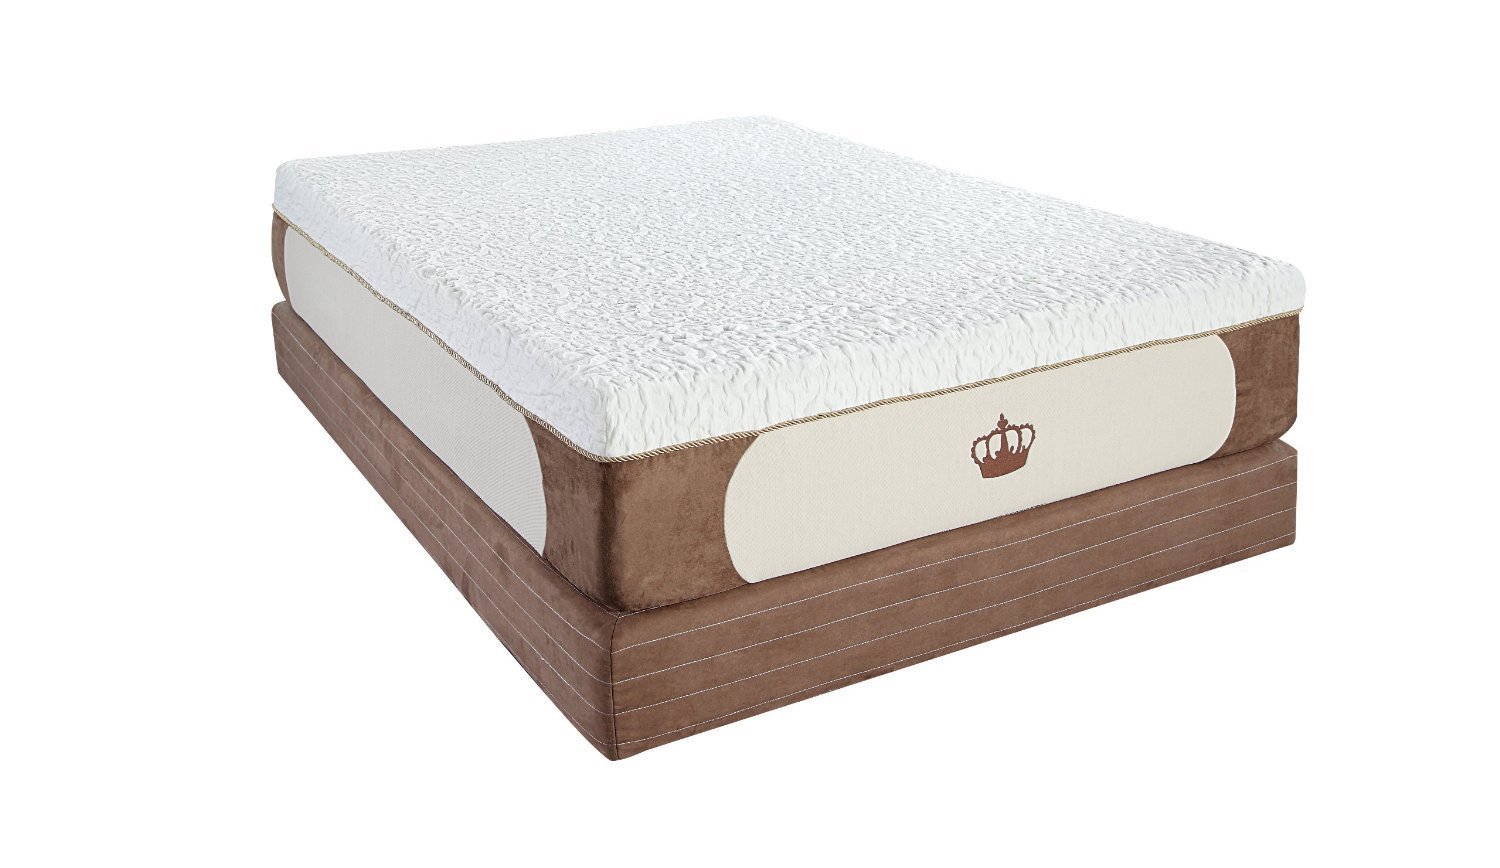 12 viviant foam mattress